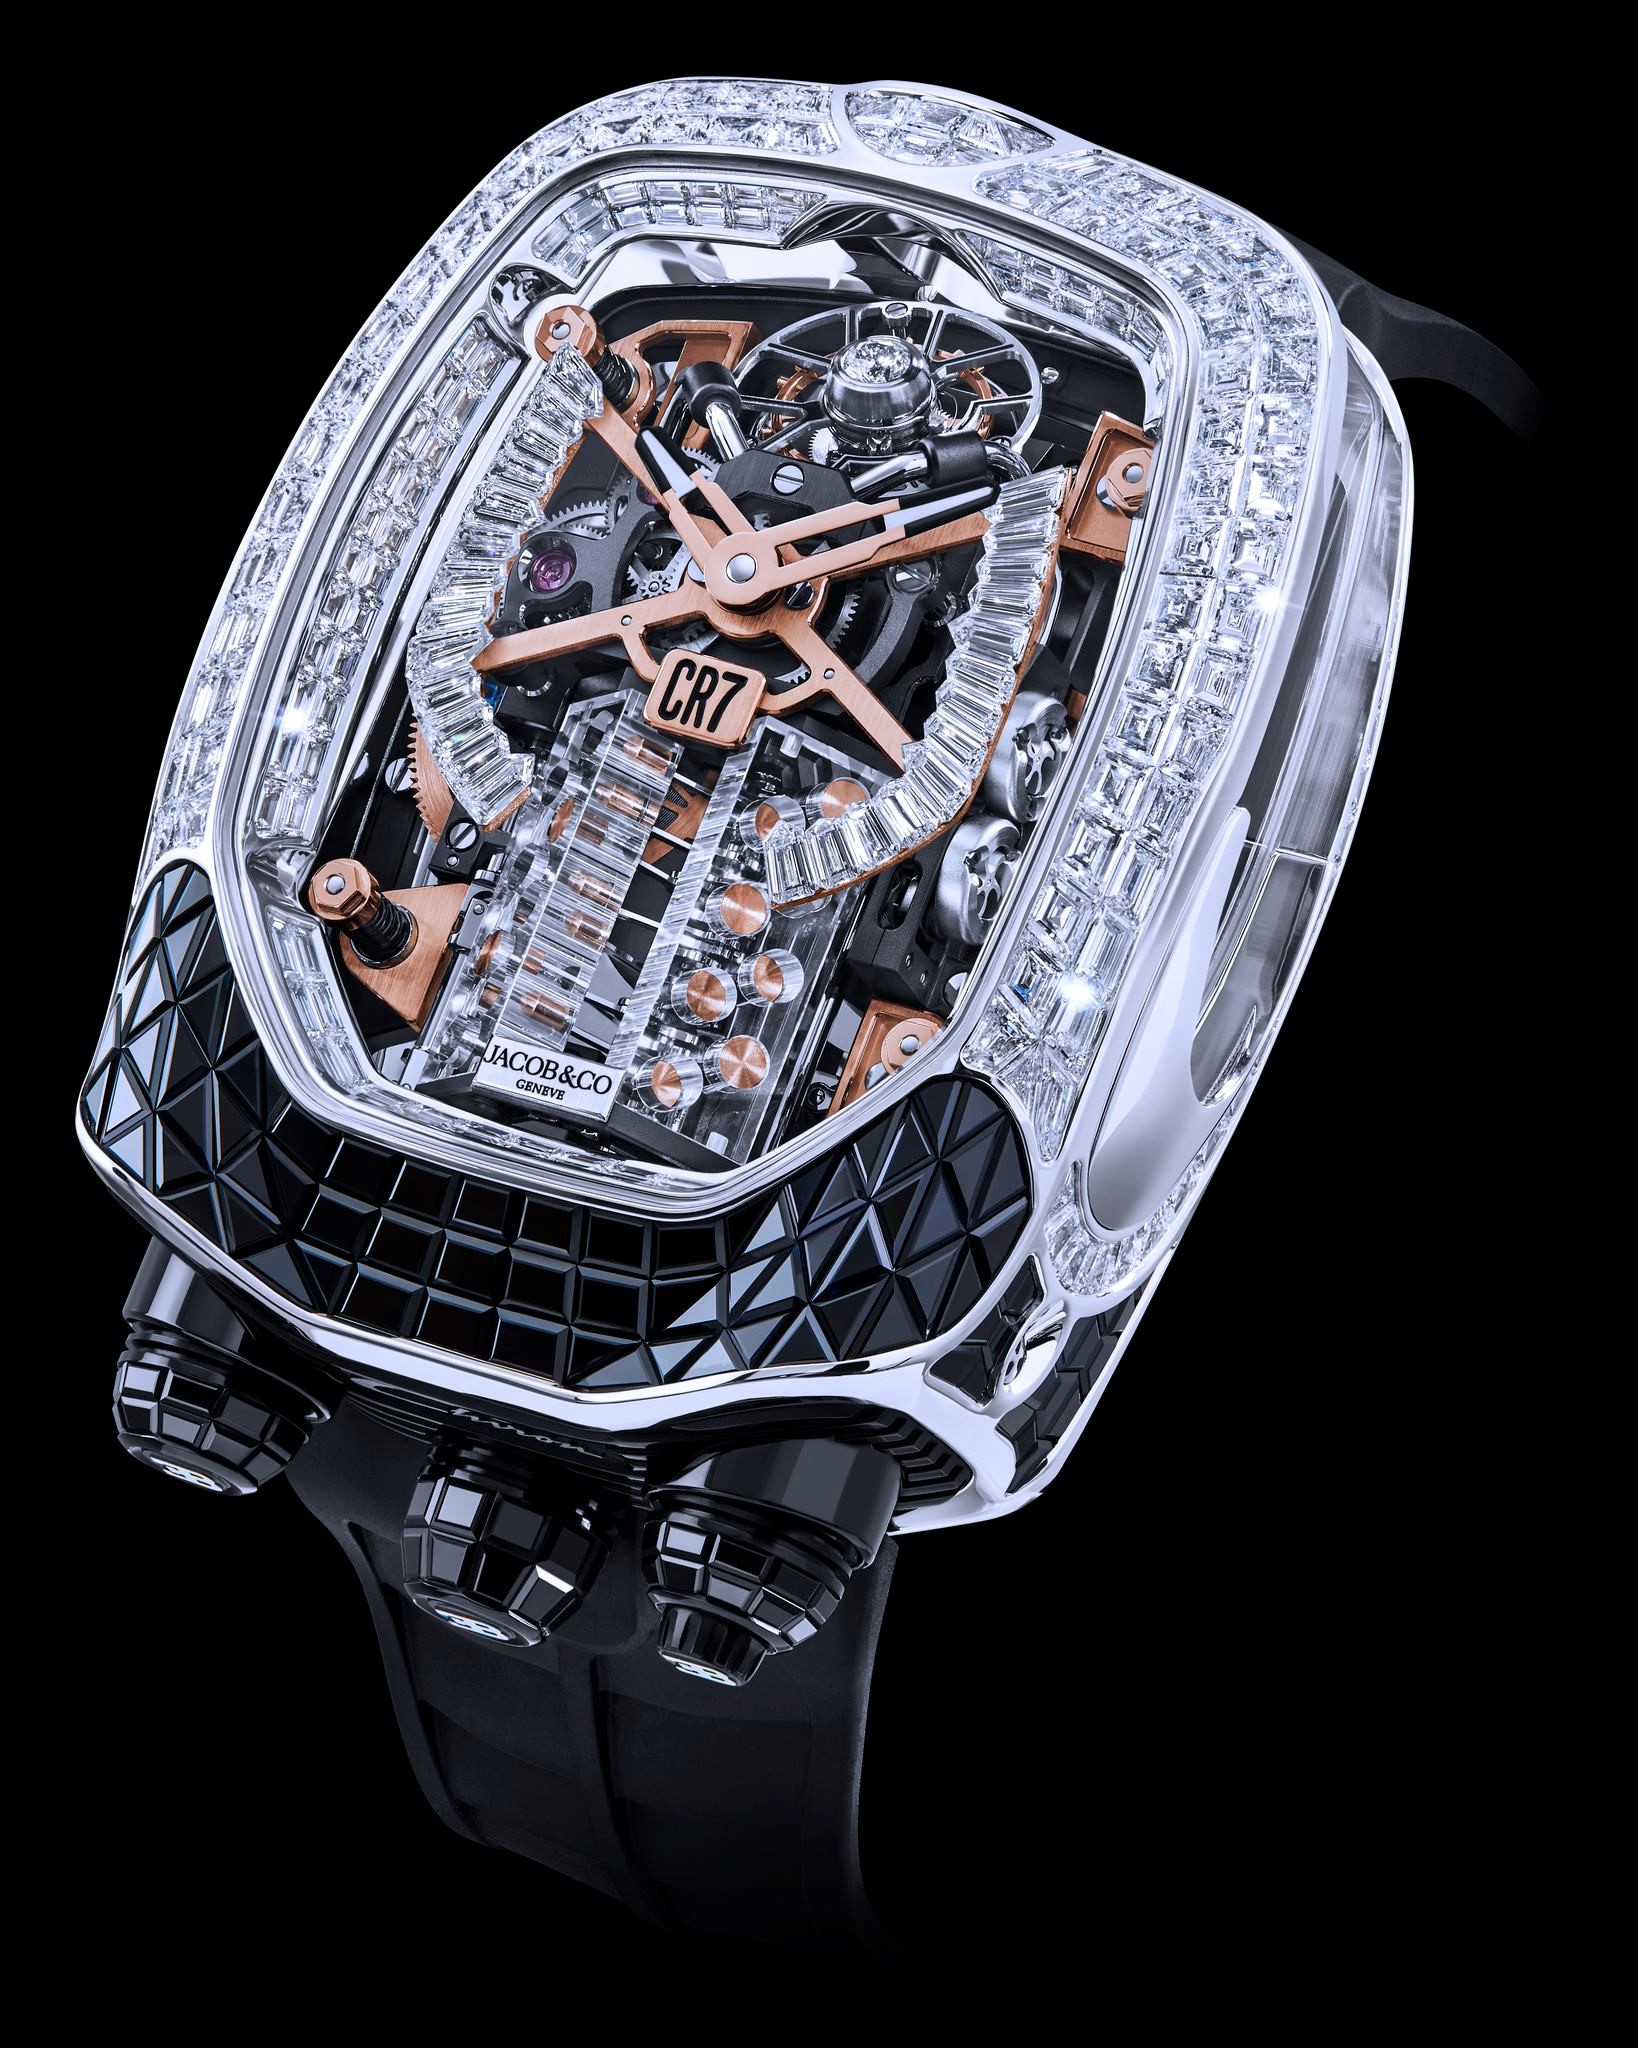 Đồng hồ Jacob & Co Bugatti Chiron Baguette trị giá 1 triệu USD của siêu sao bóng đá CR7